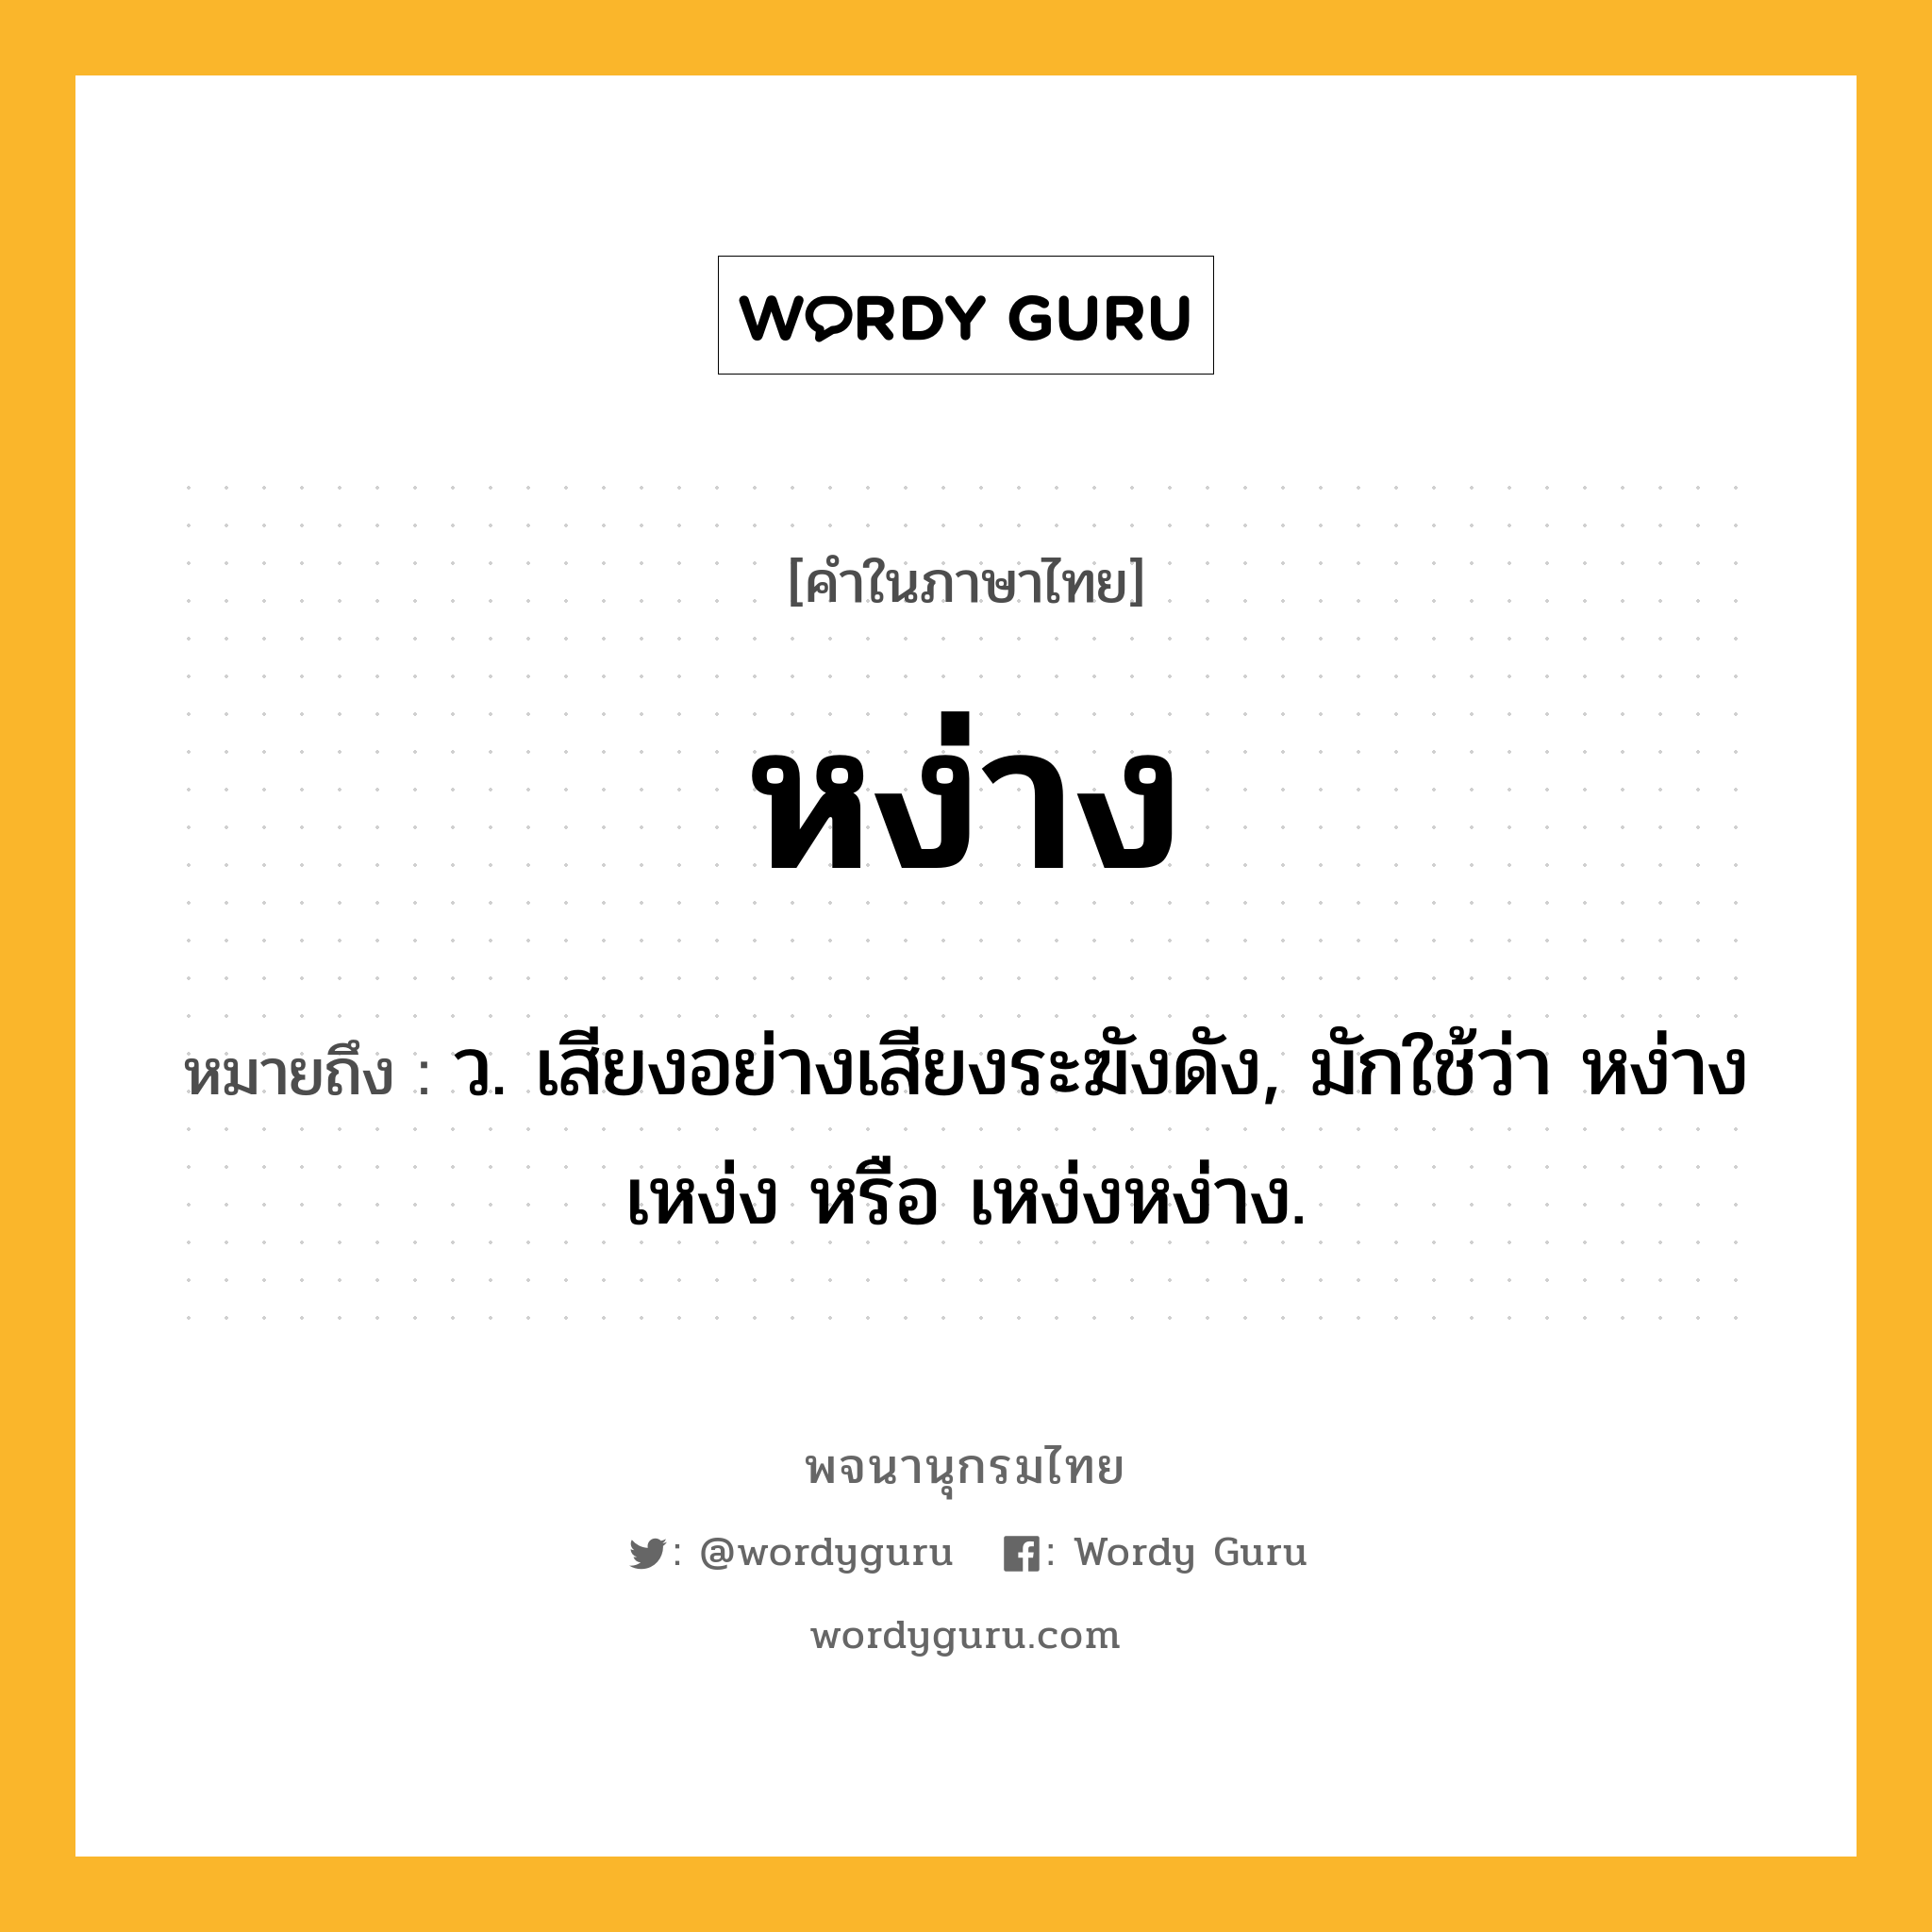 หง่าง หมายถึงอะไร?, คำในภาษาไทย หง่าง หมายถึง ว. เสียงอย่างเสียงระฆังดัง, มักใช้ว่า หง่างเหง่ง หรือ เหง่งหง่าง.